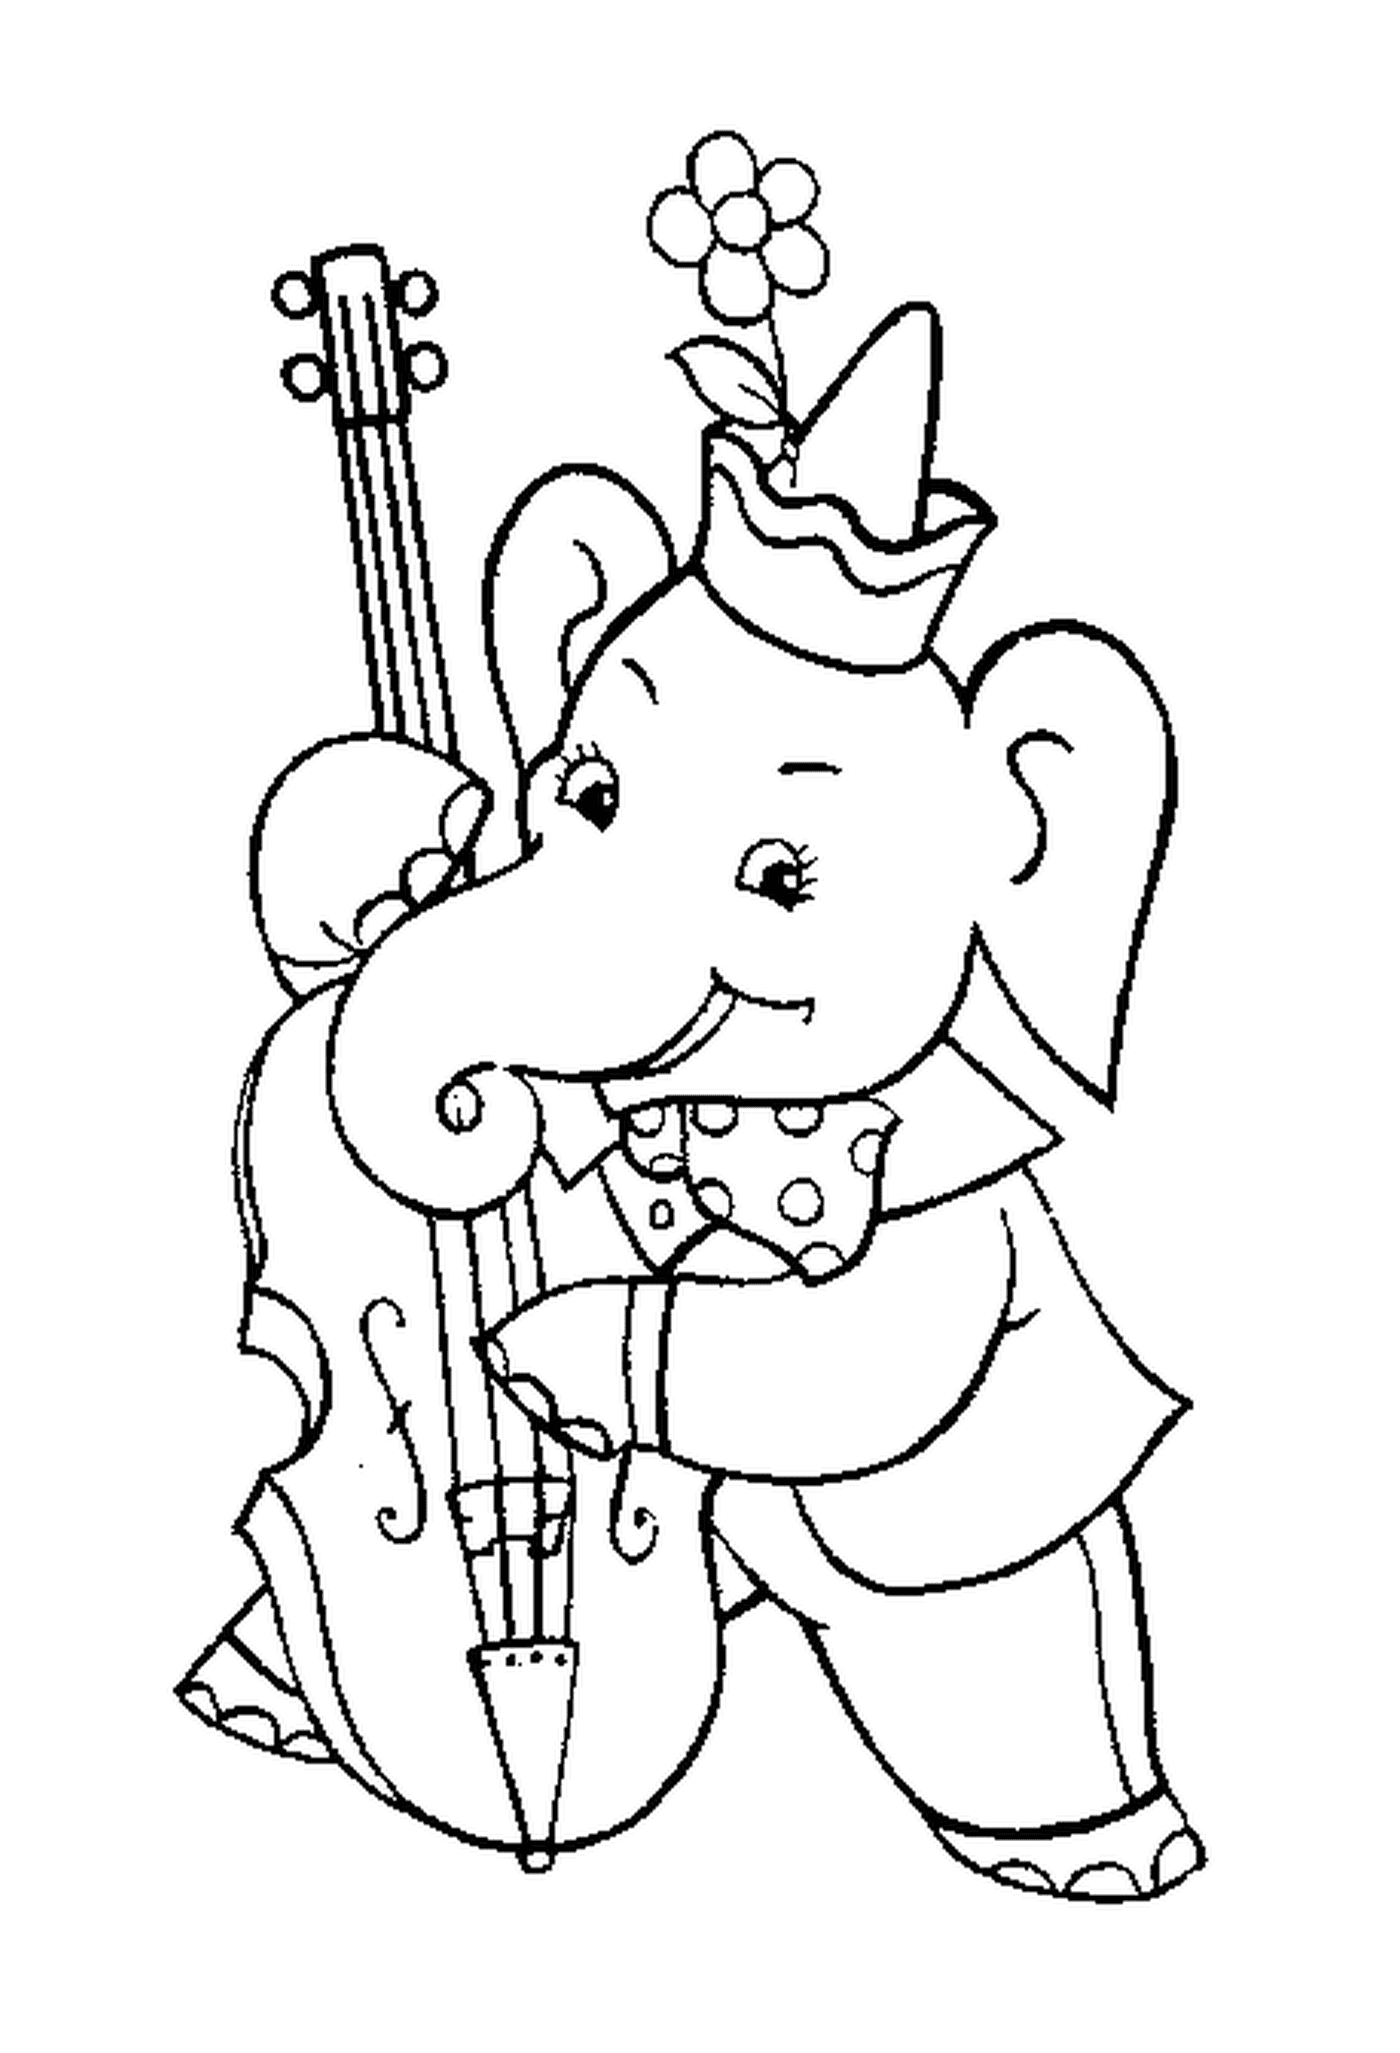  Ein Elefant spielt Cello 